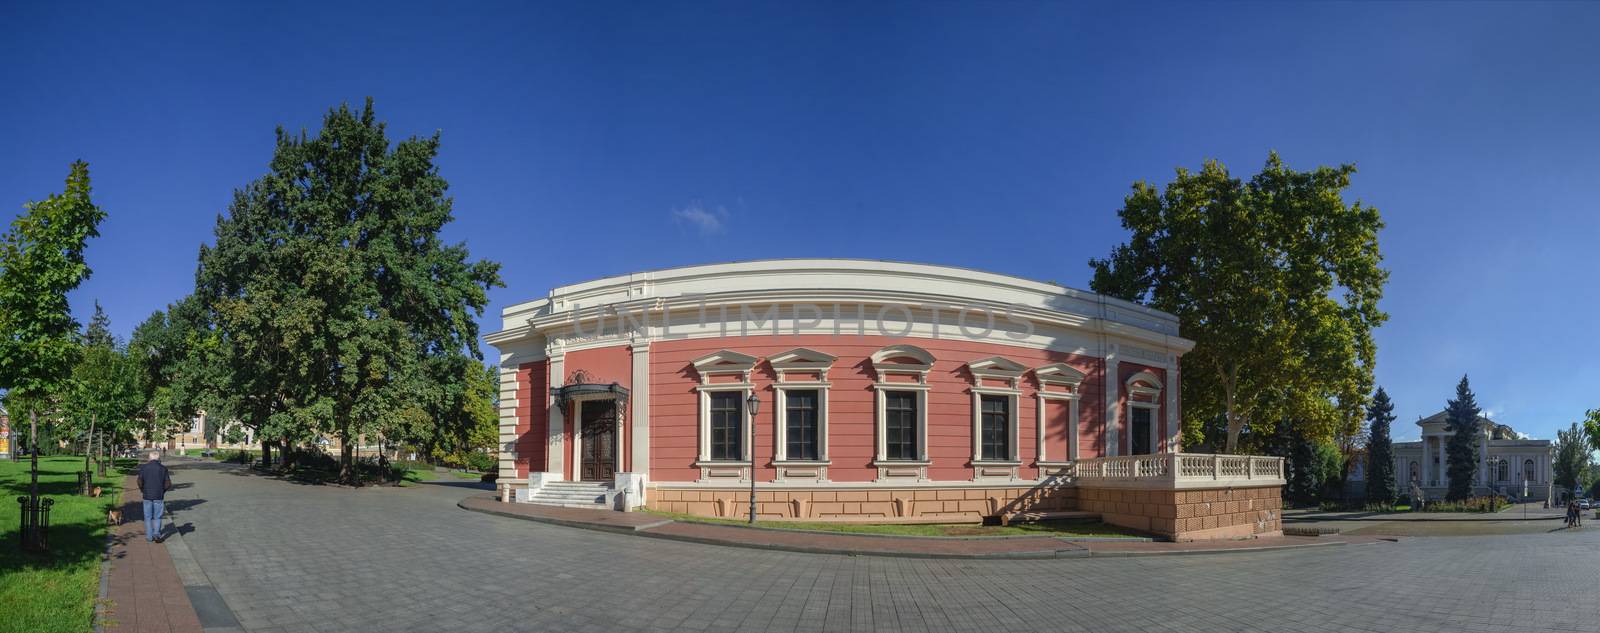 Theater Square in Odessa, Ukraine by Multipedia